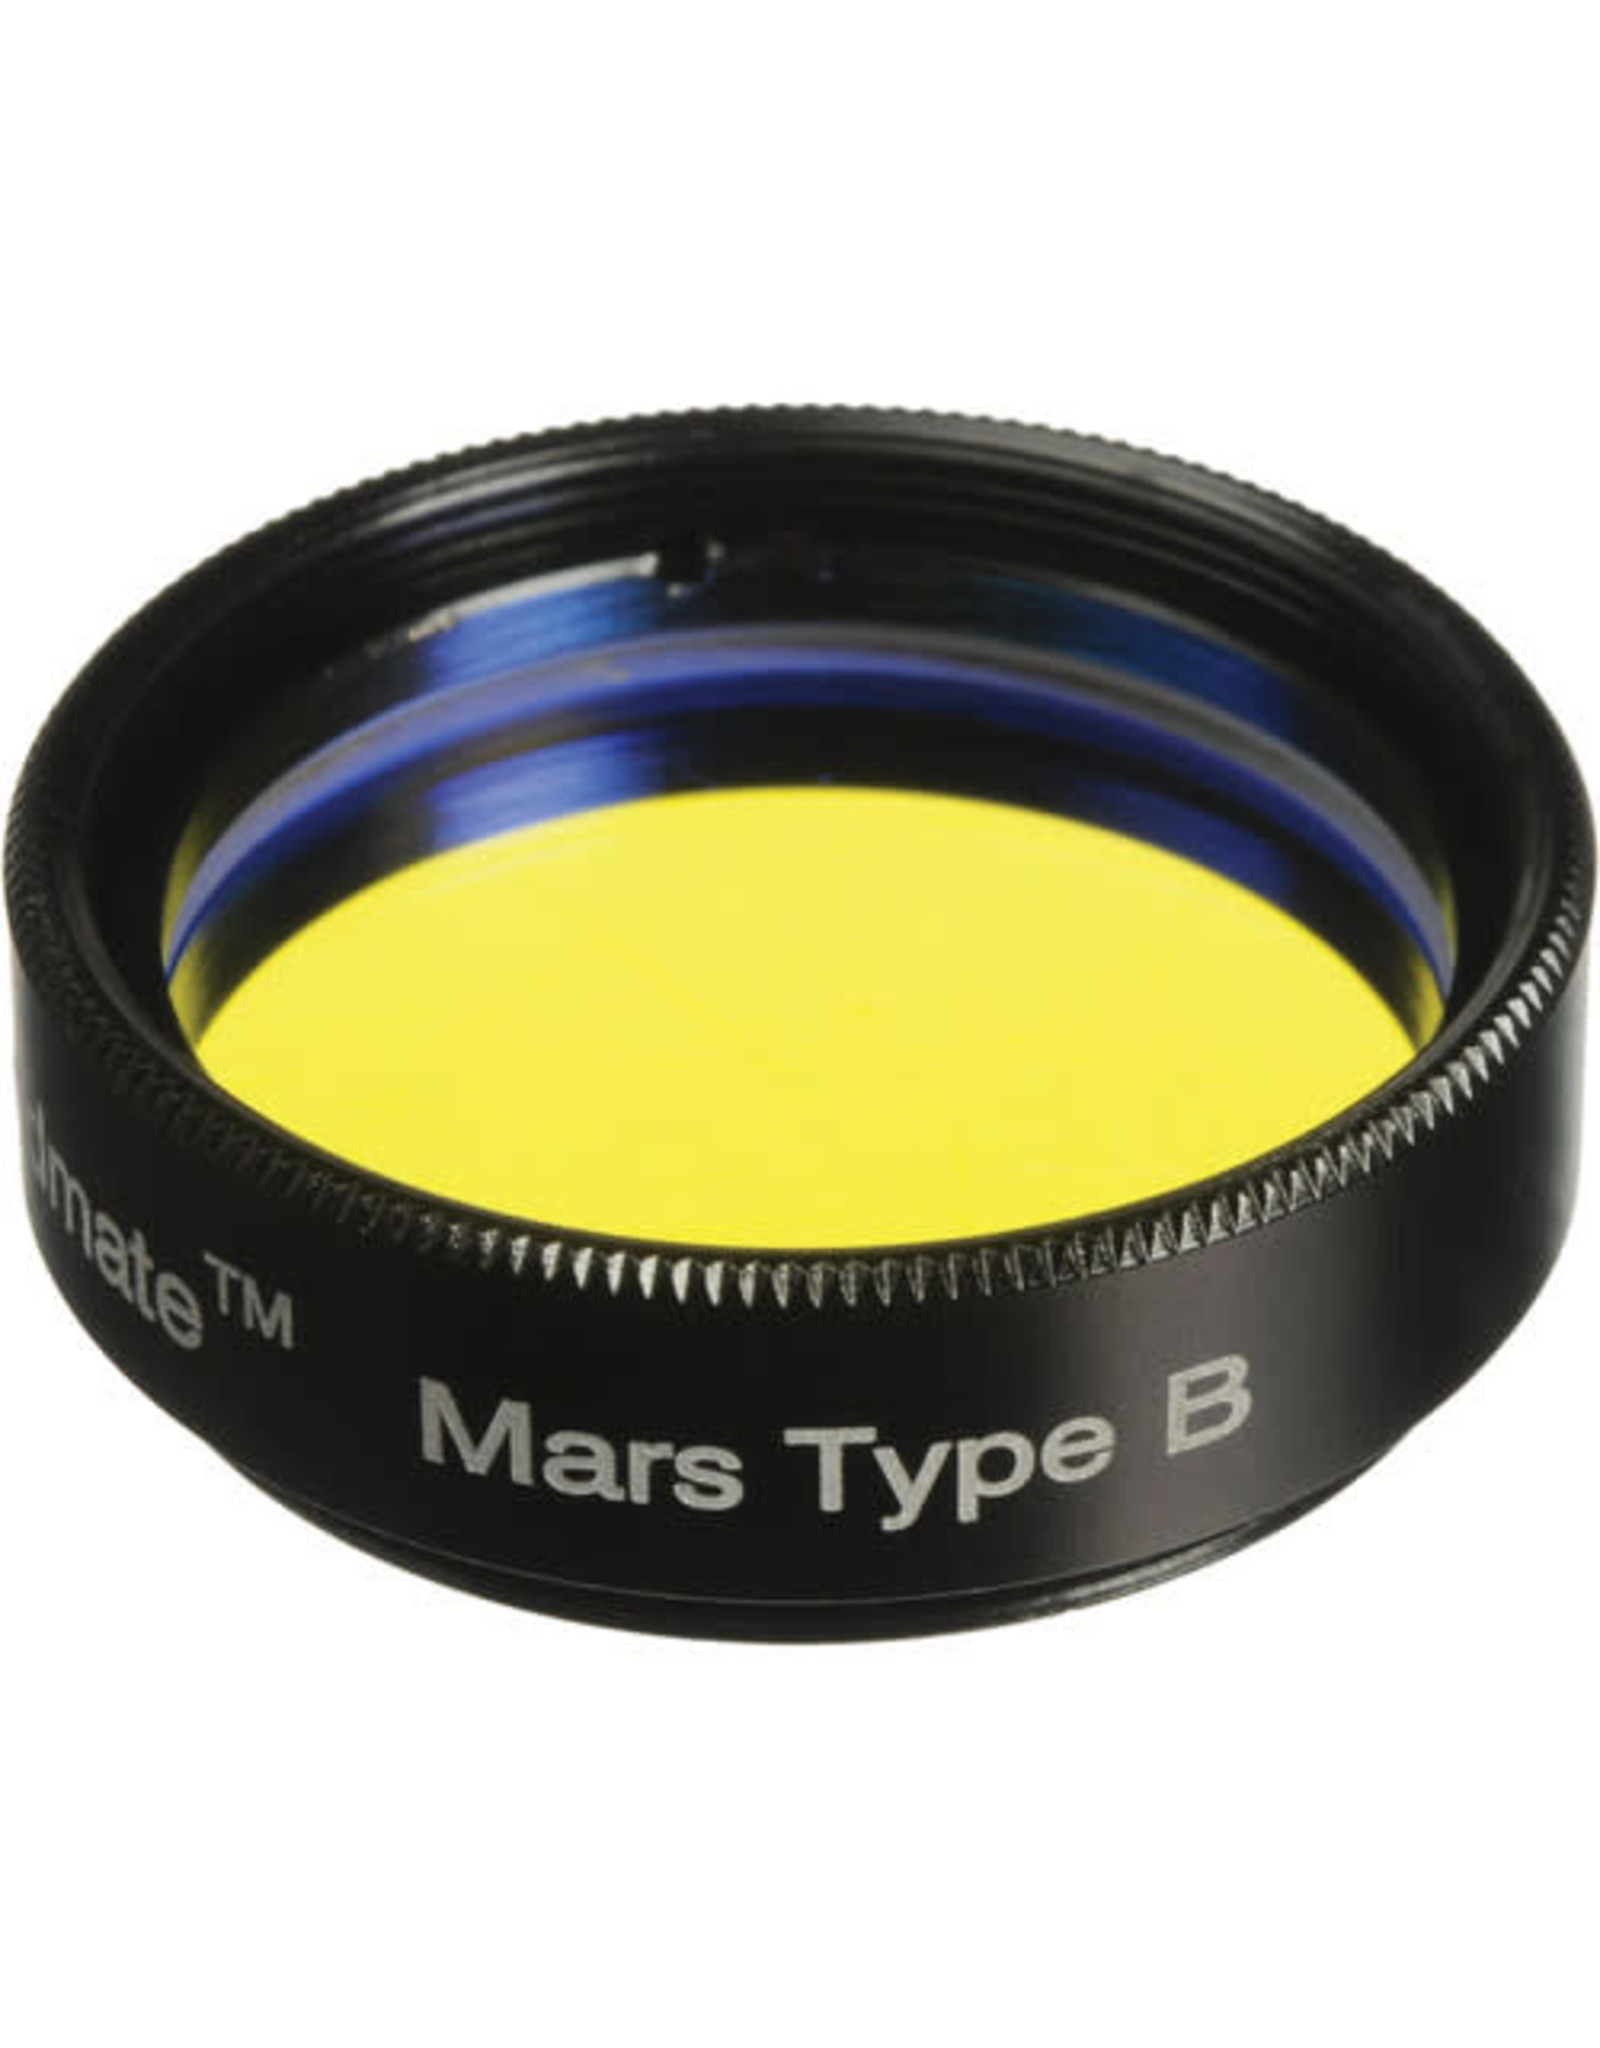 Tele Vue Tele Vue 1.25 Bandmate Mars Type B Filter